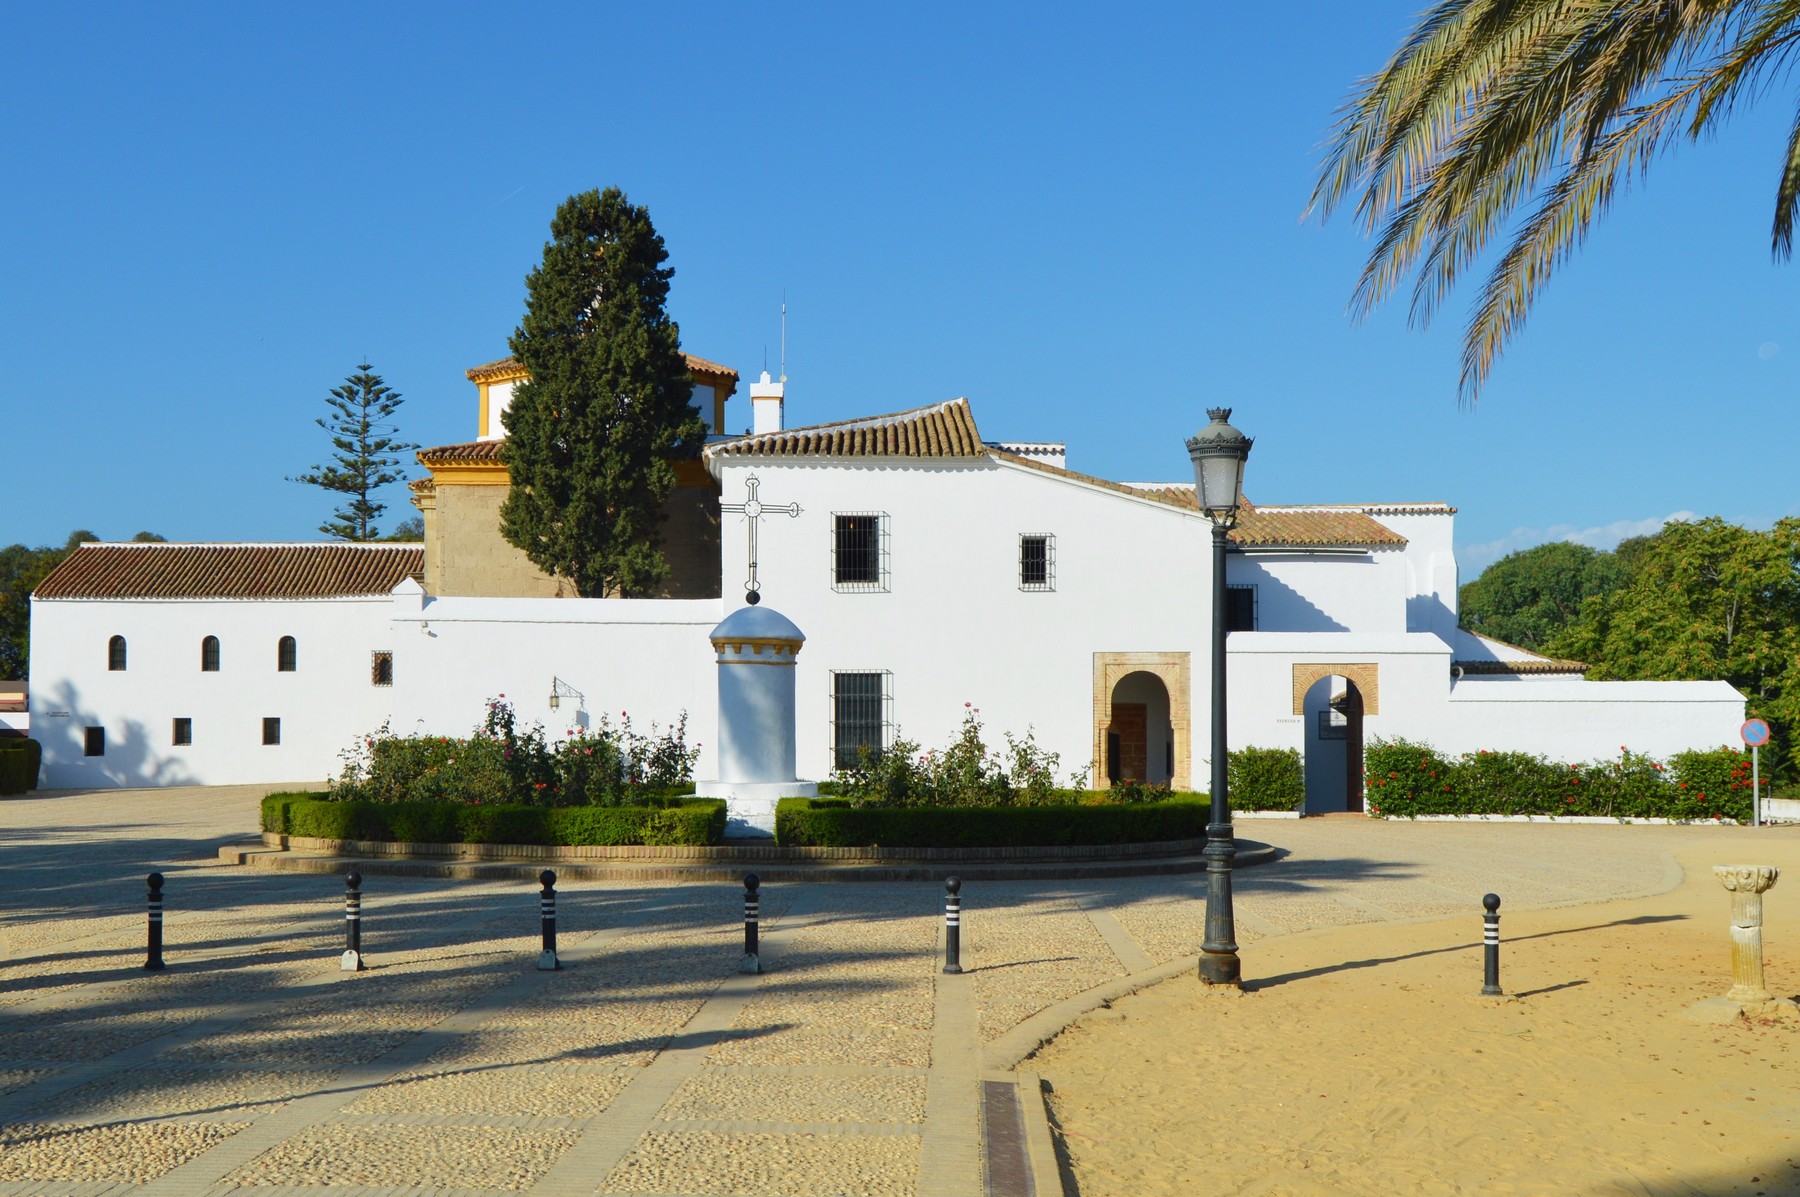 Ruta Huelva Colombina y Británica - Huelva Experiences